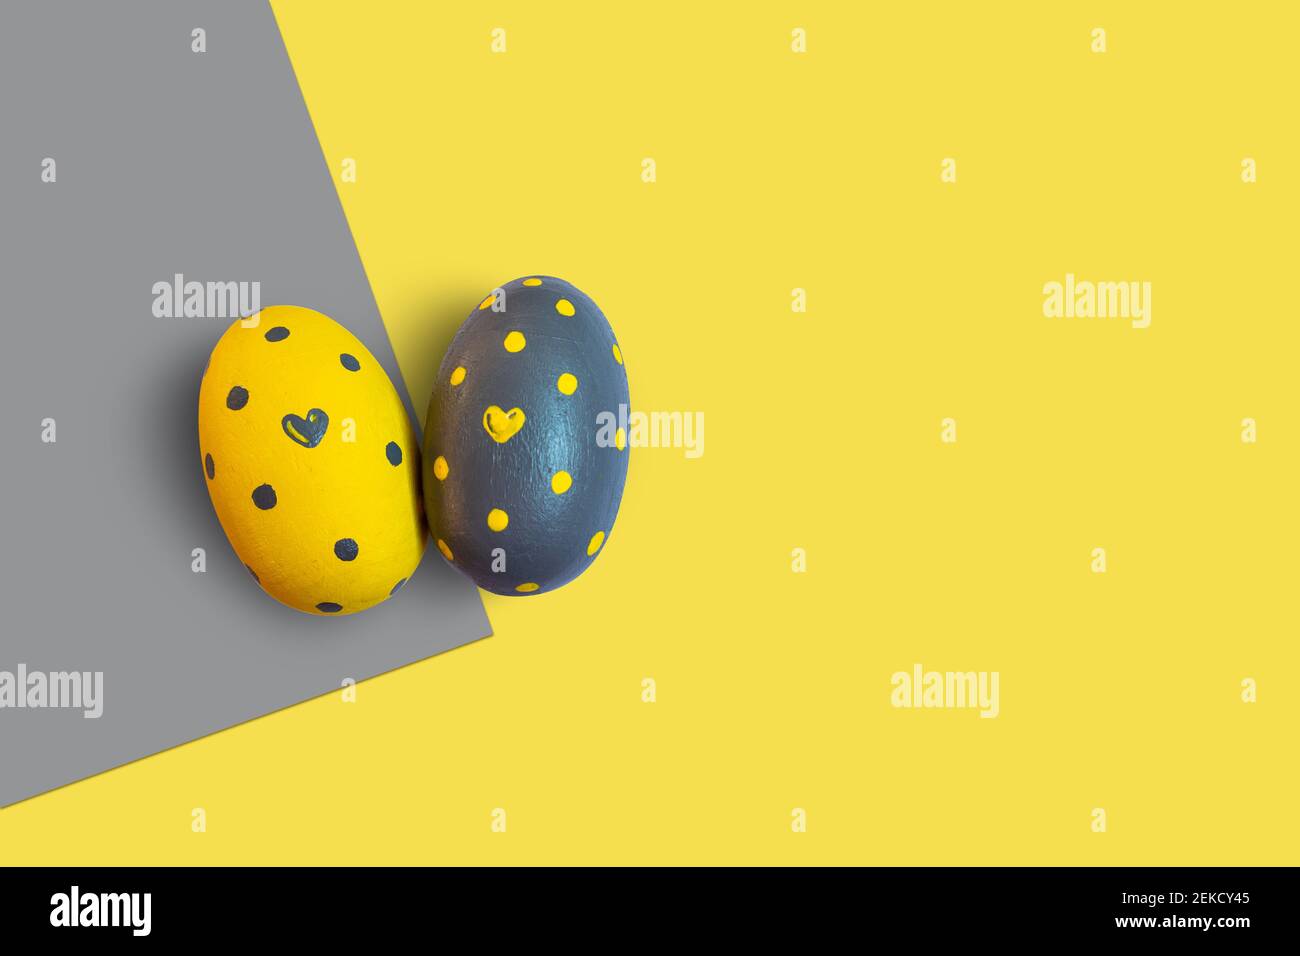 Pasqua in giallo illuminato e grigio estremo. Due uova decorate con cuori e puntini su uno sfondo bicolore. Foto Stock